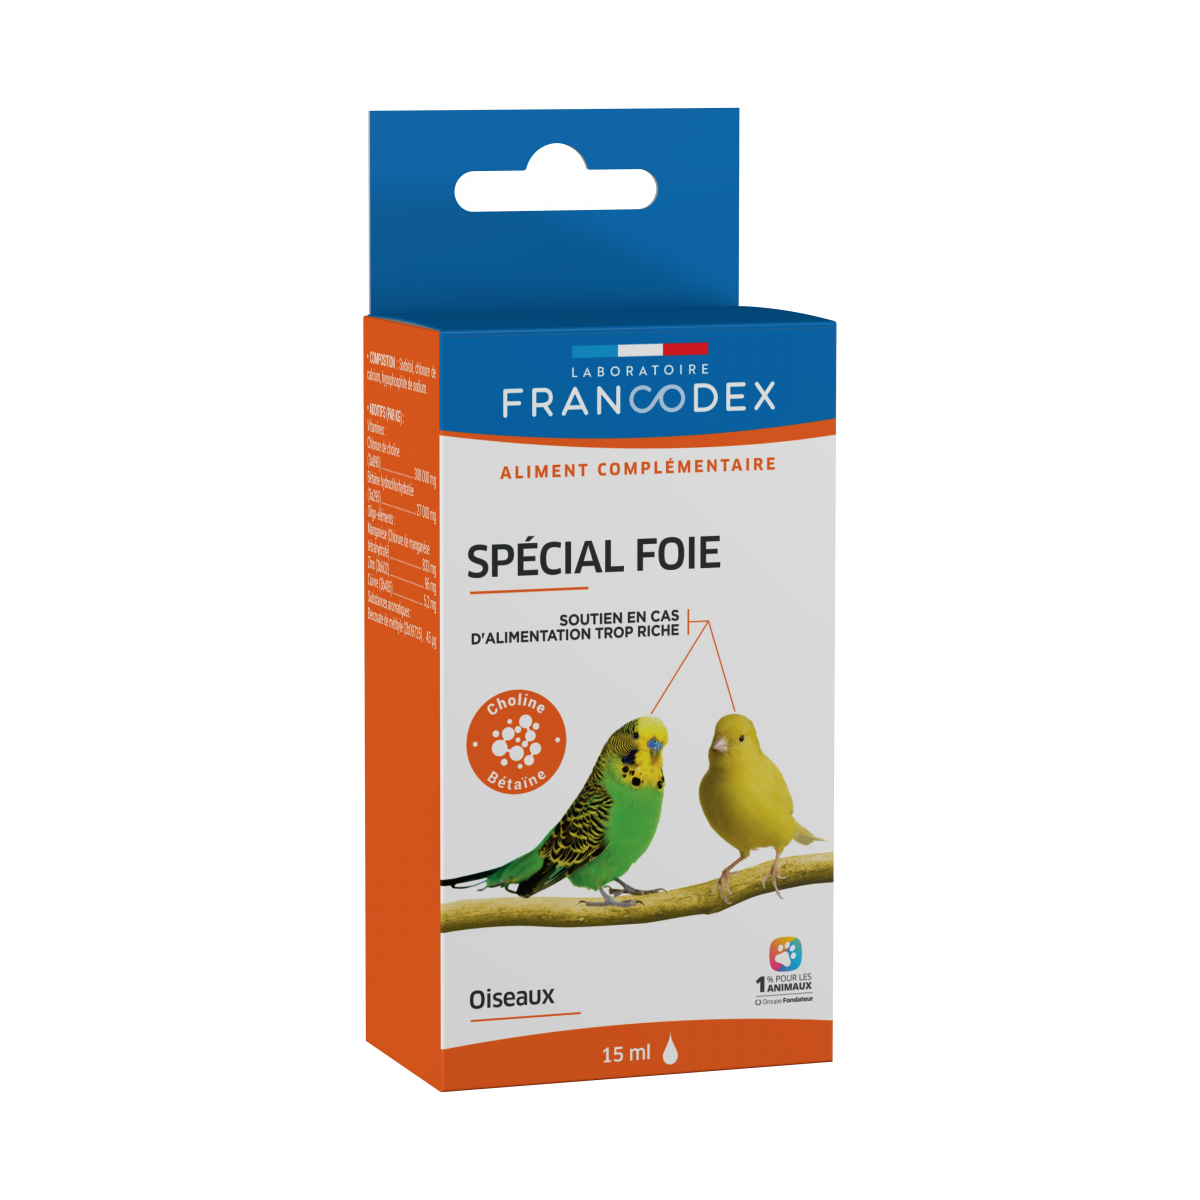 Francodex Complément spécial foie pour oiseaux